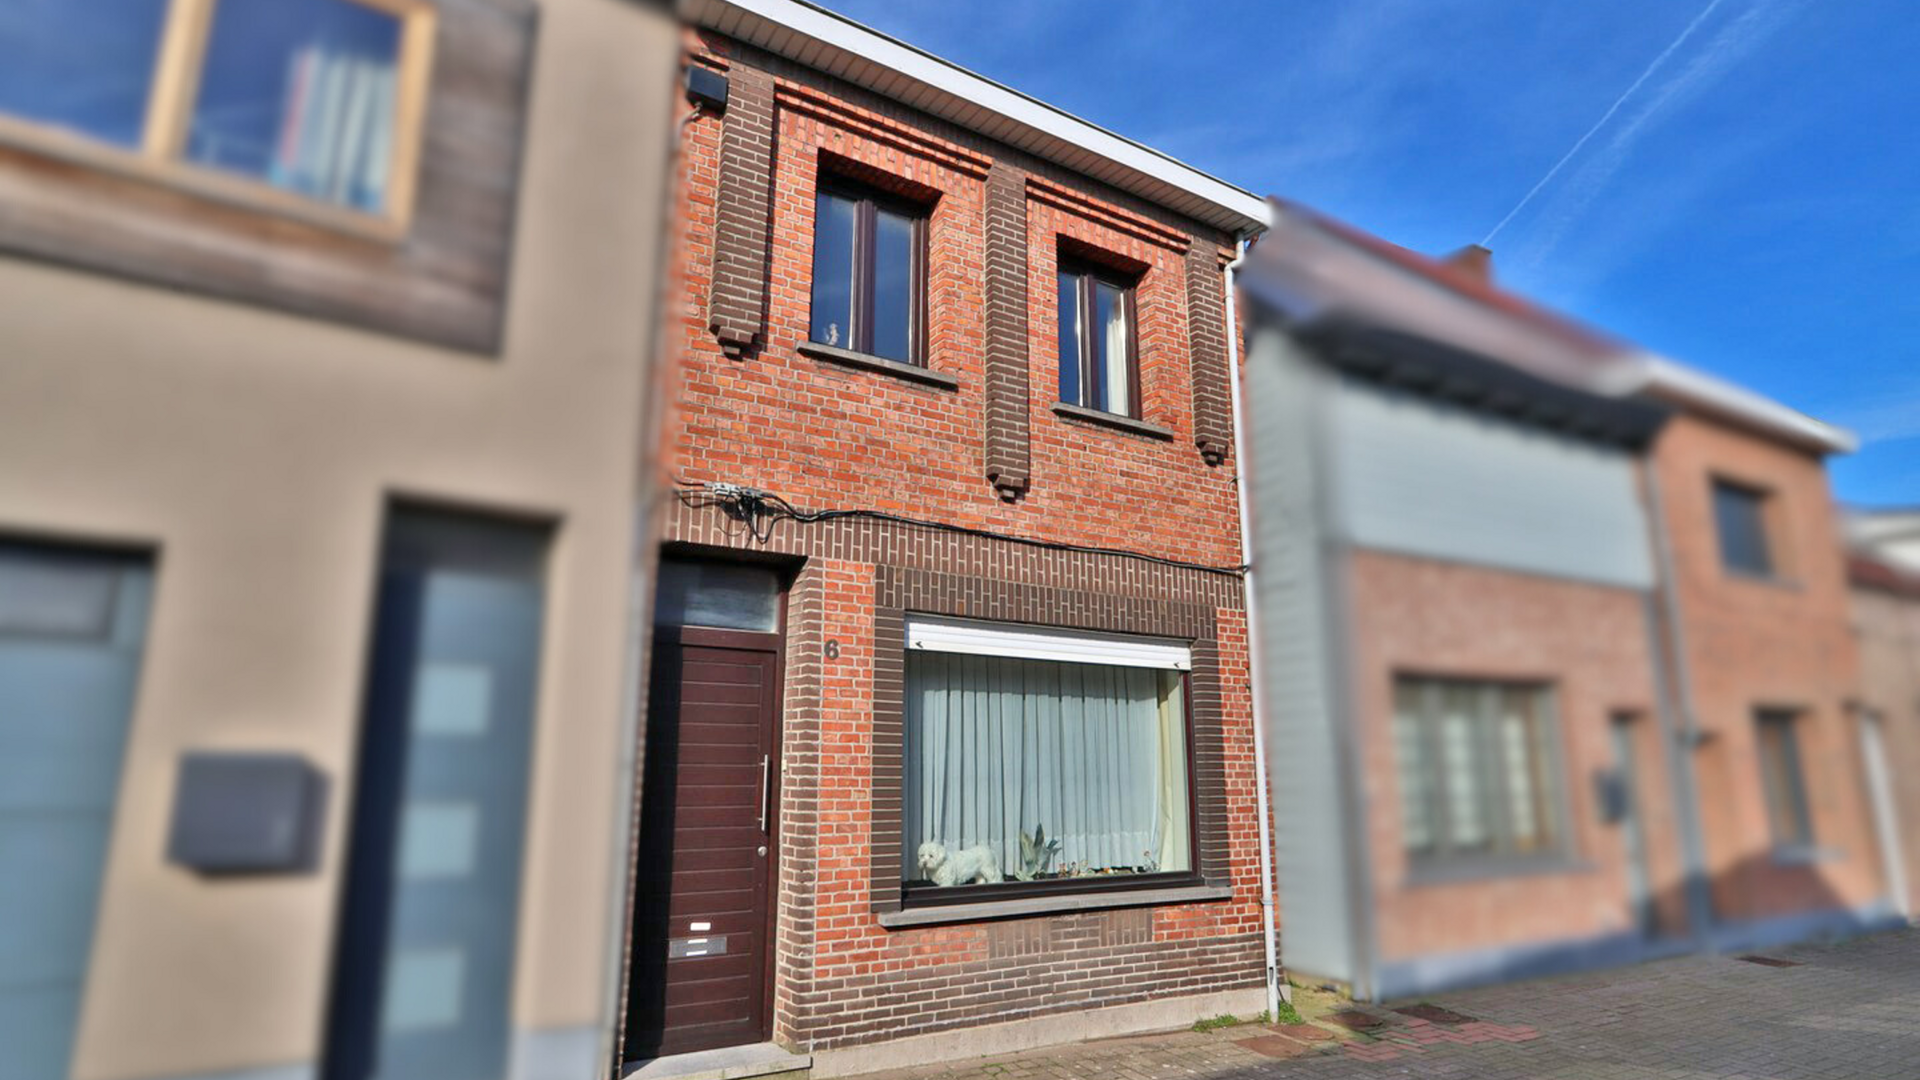 Huis te koop in Kieldrecht